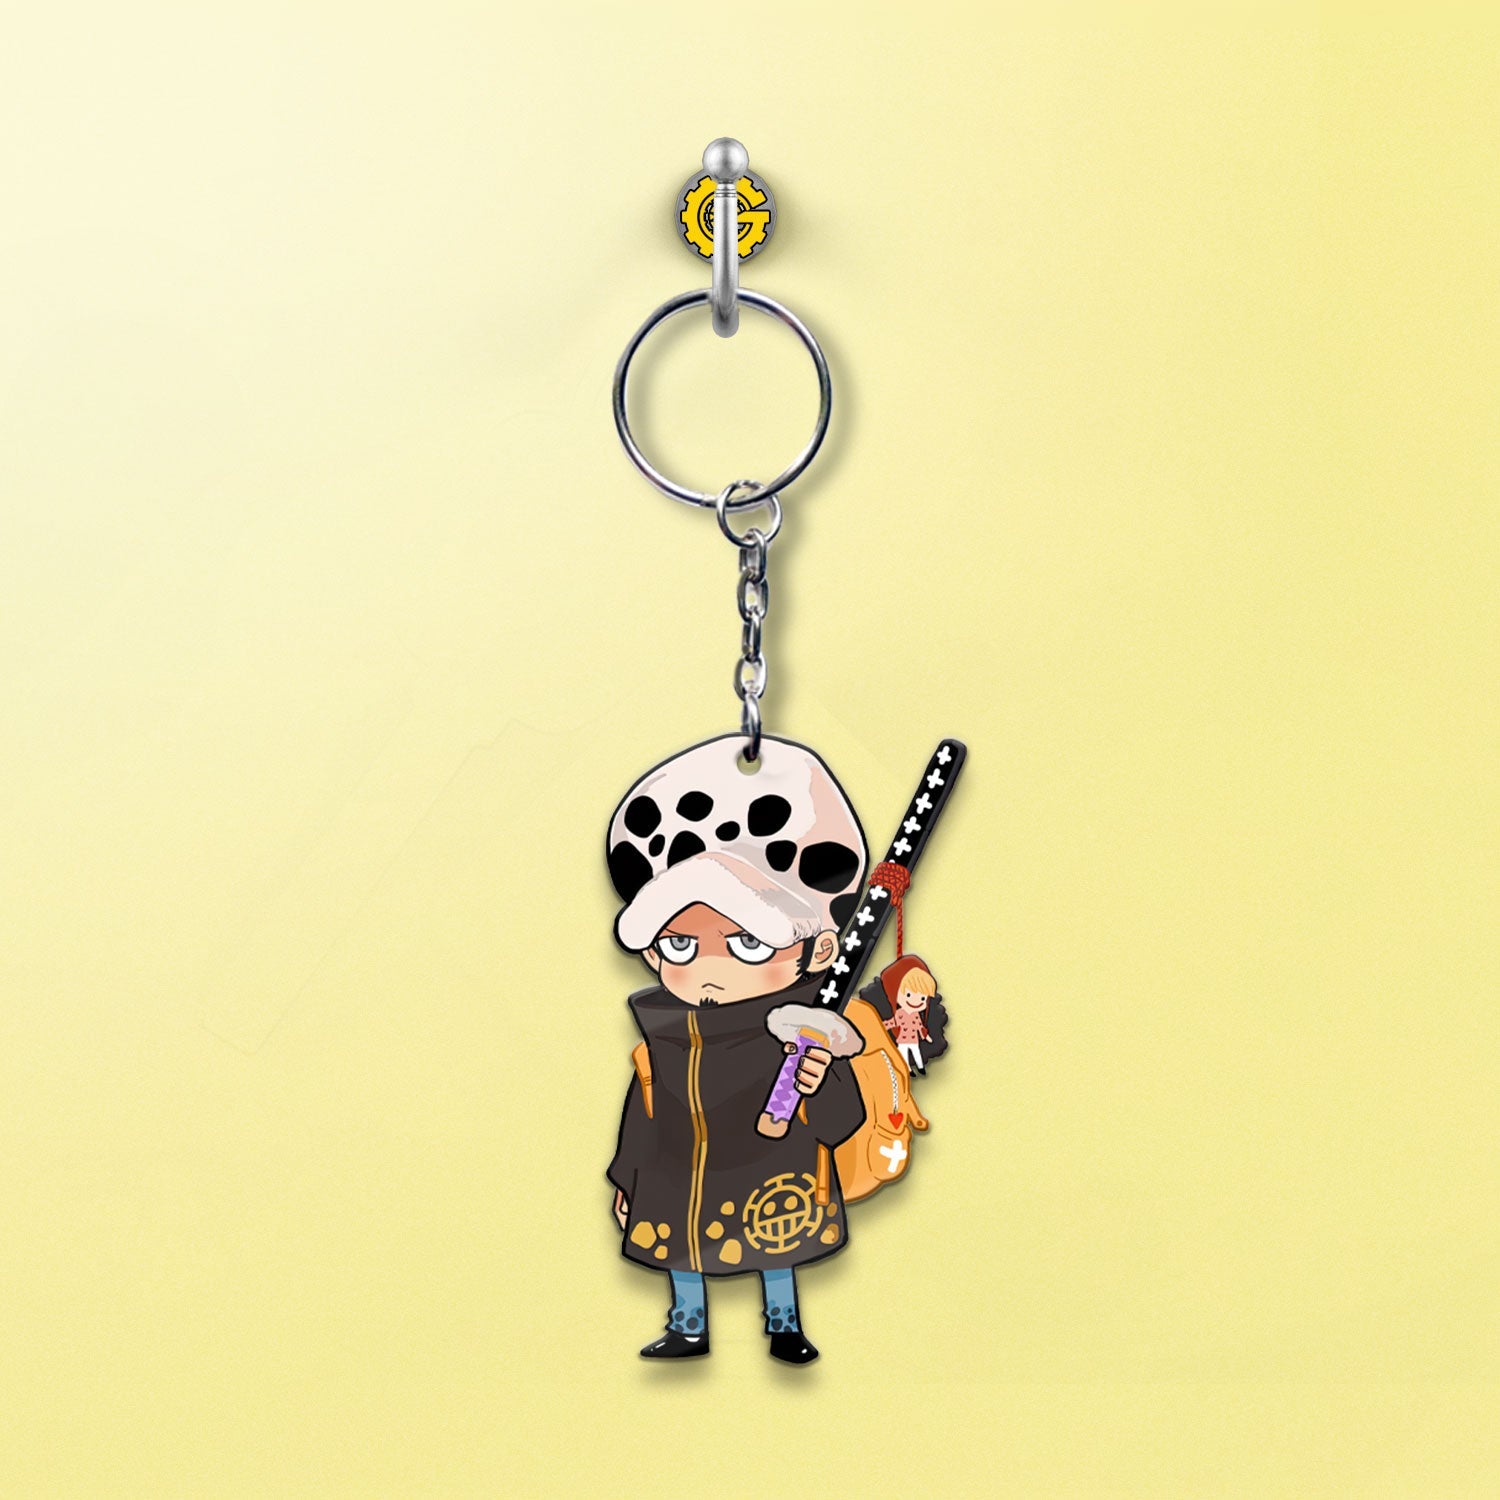 Trafalgar Law Keychains Custom One Piece Anime Car Accessories